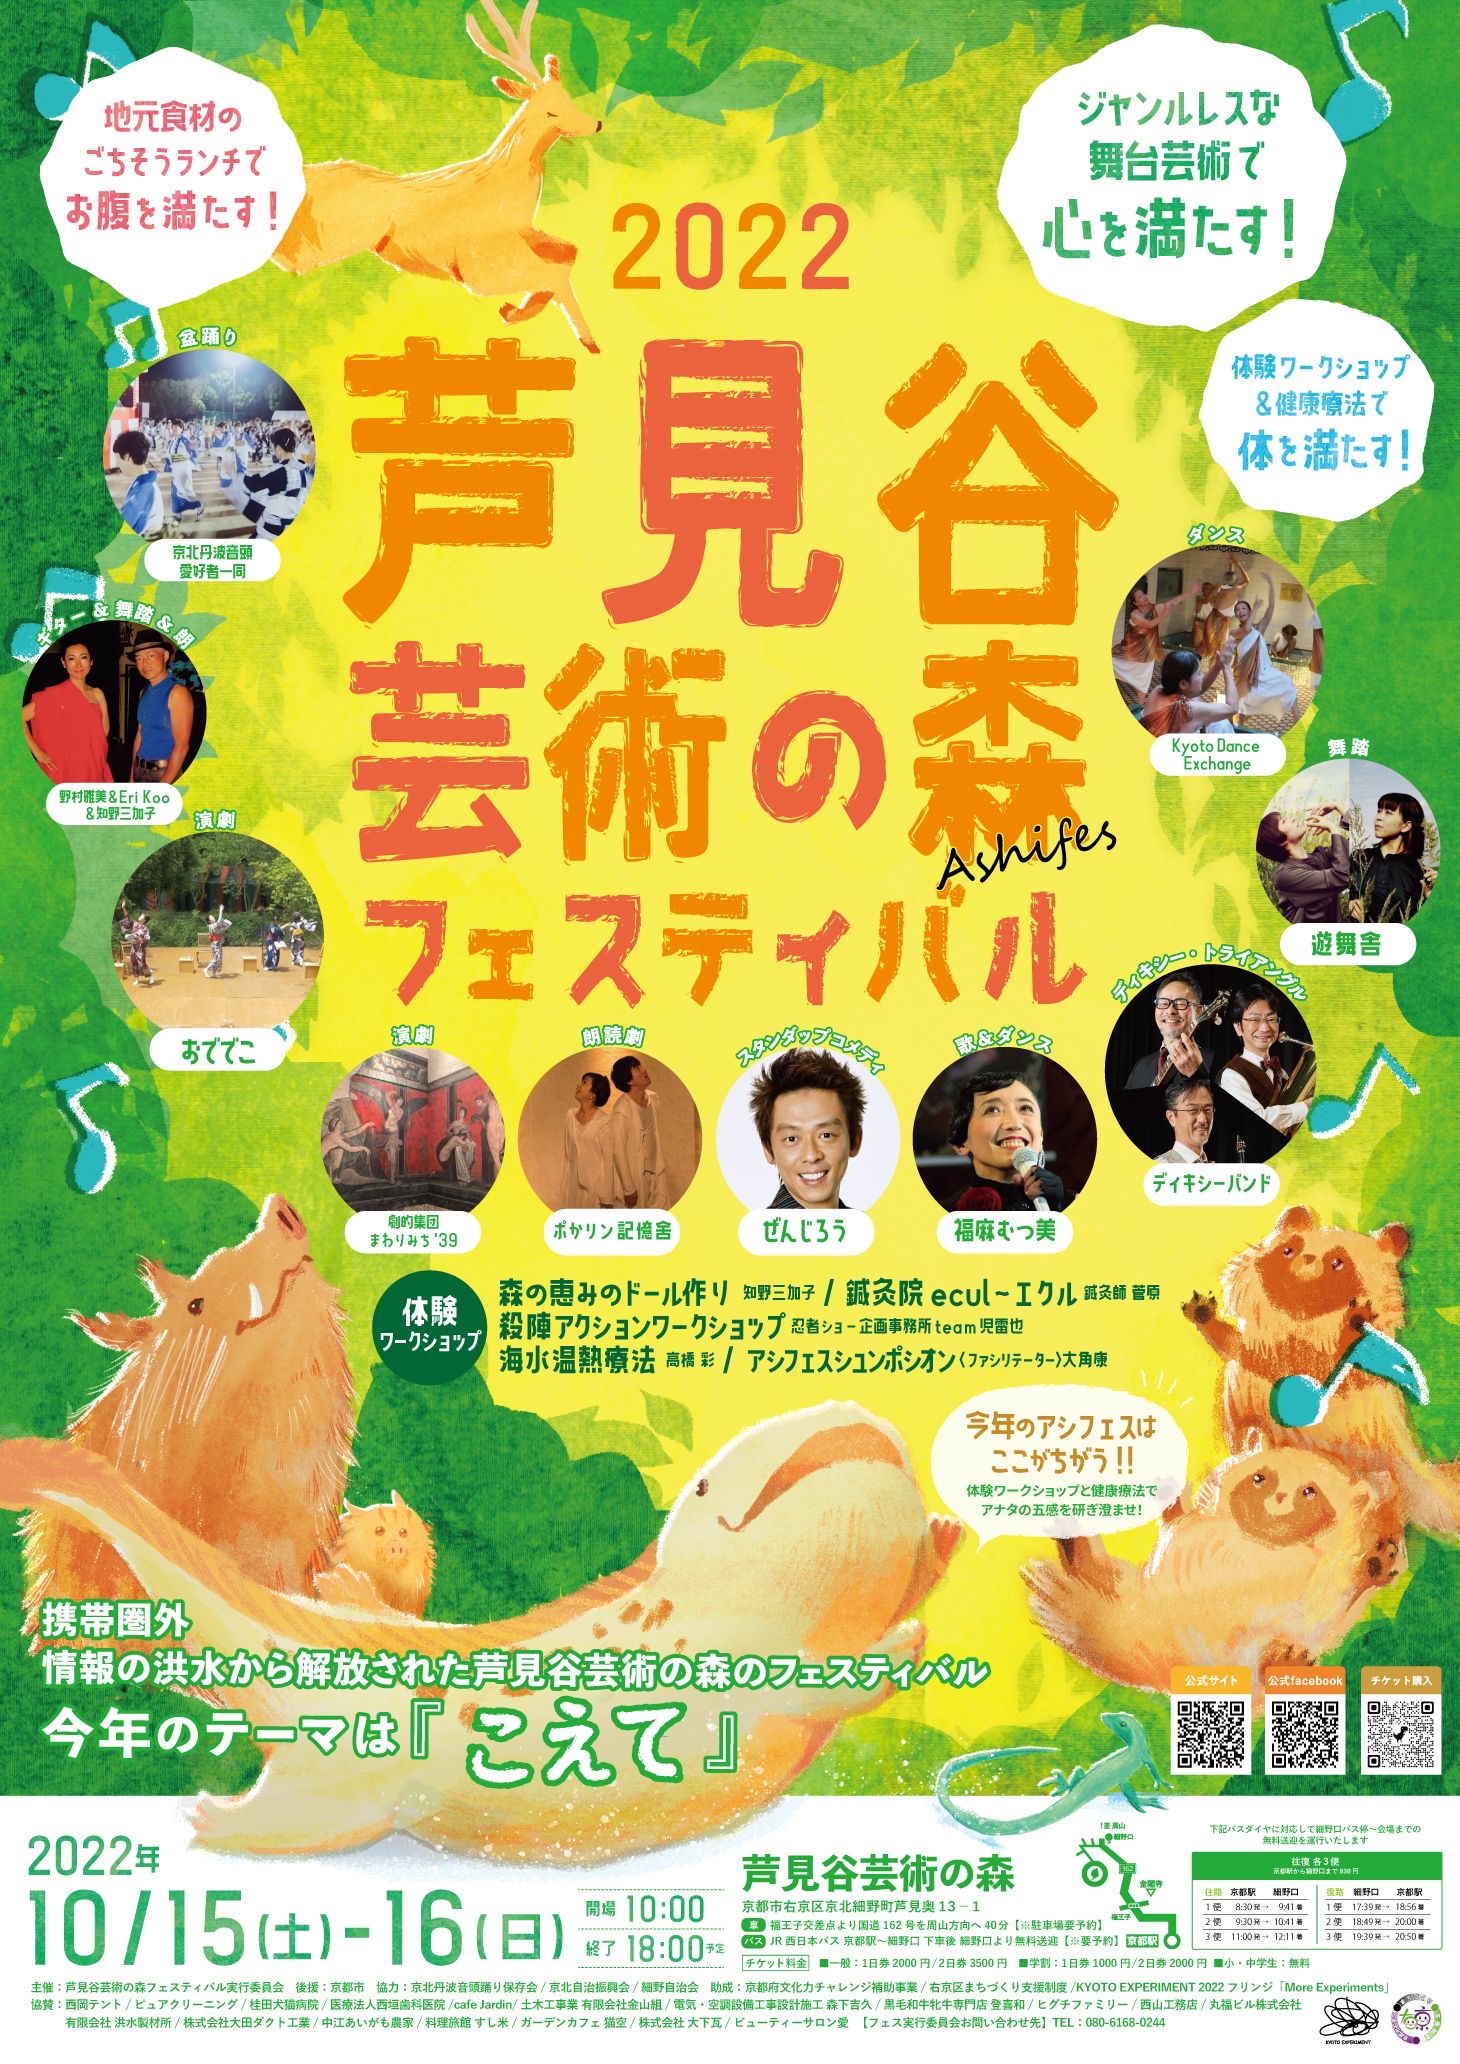 【お知らせ】芦見谷芸術の森フェスティバル